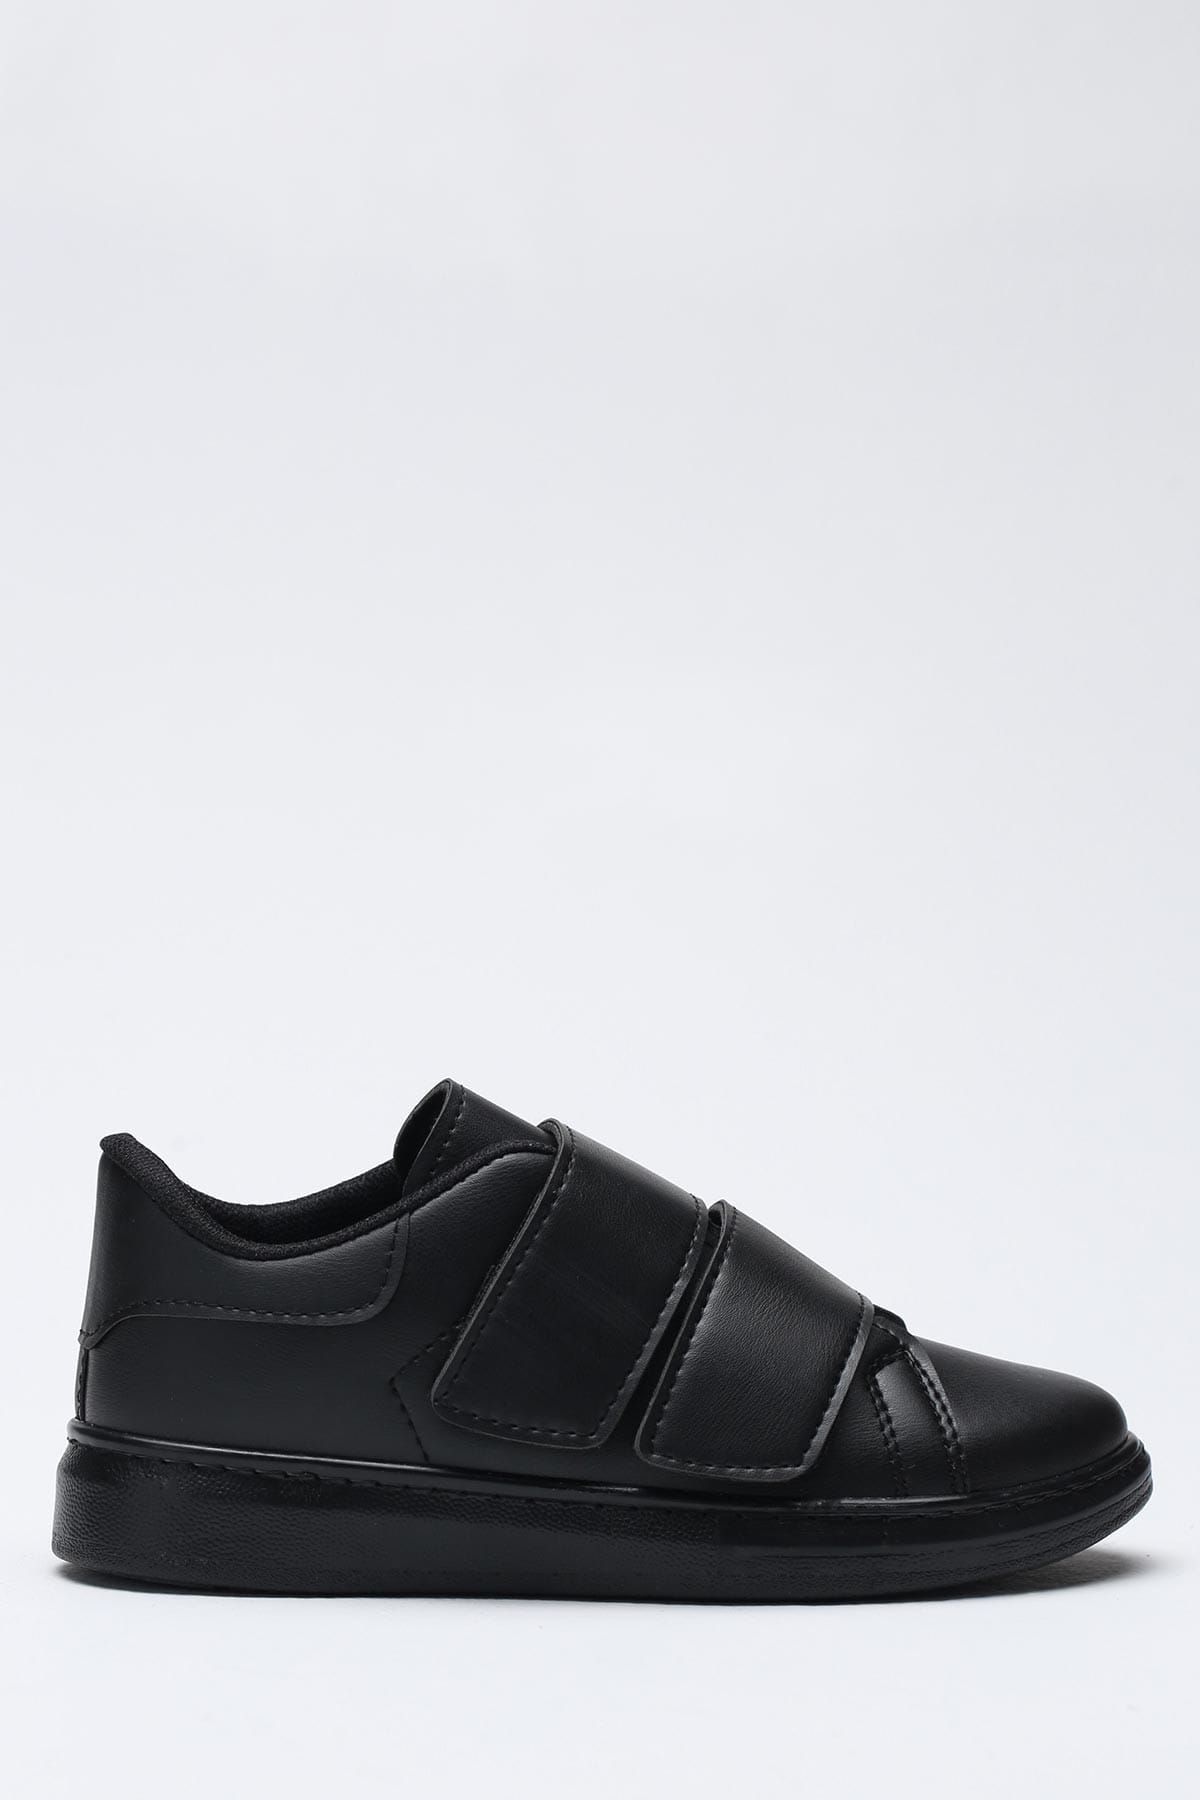 Ayakkabı Modası Siyah Cilt Kadın Spor Ayakkabı 1938-9-4204-1